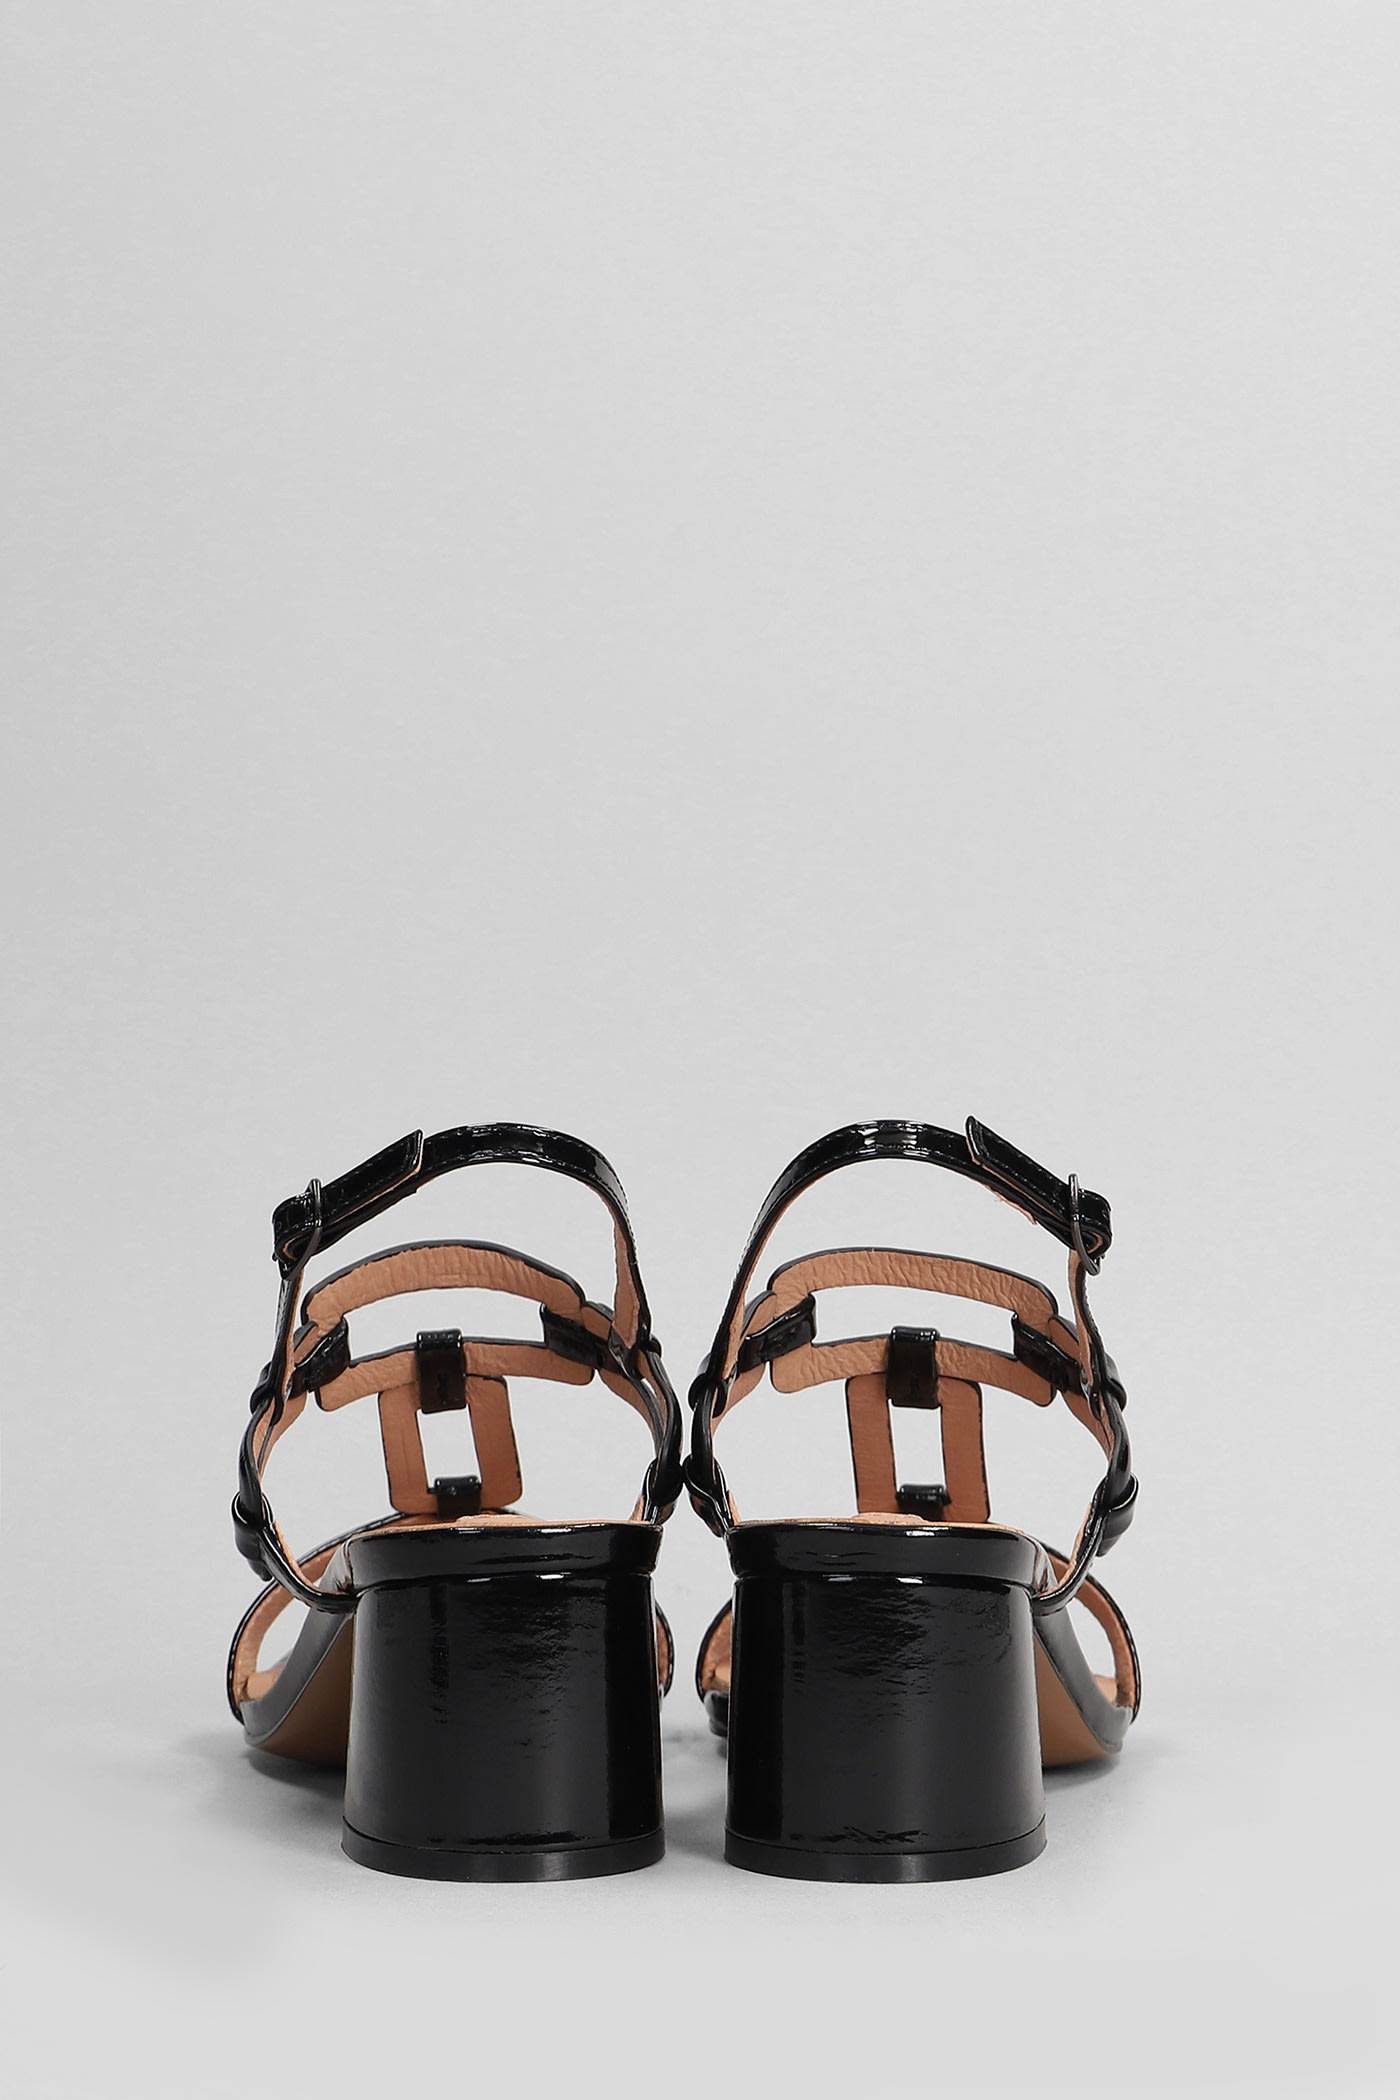 Shop Bibi Lou Zinnia 50 Sandals In Black Patent Leather